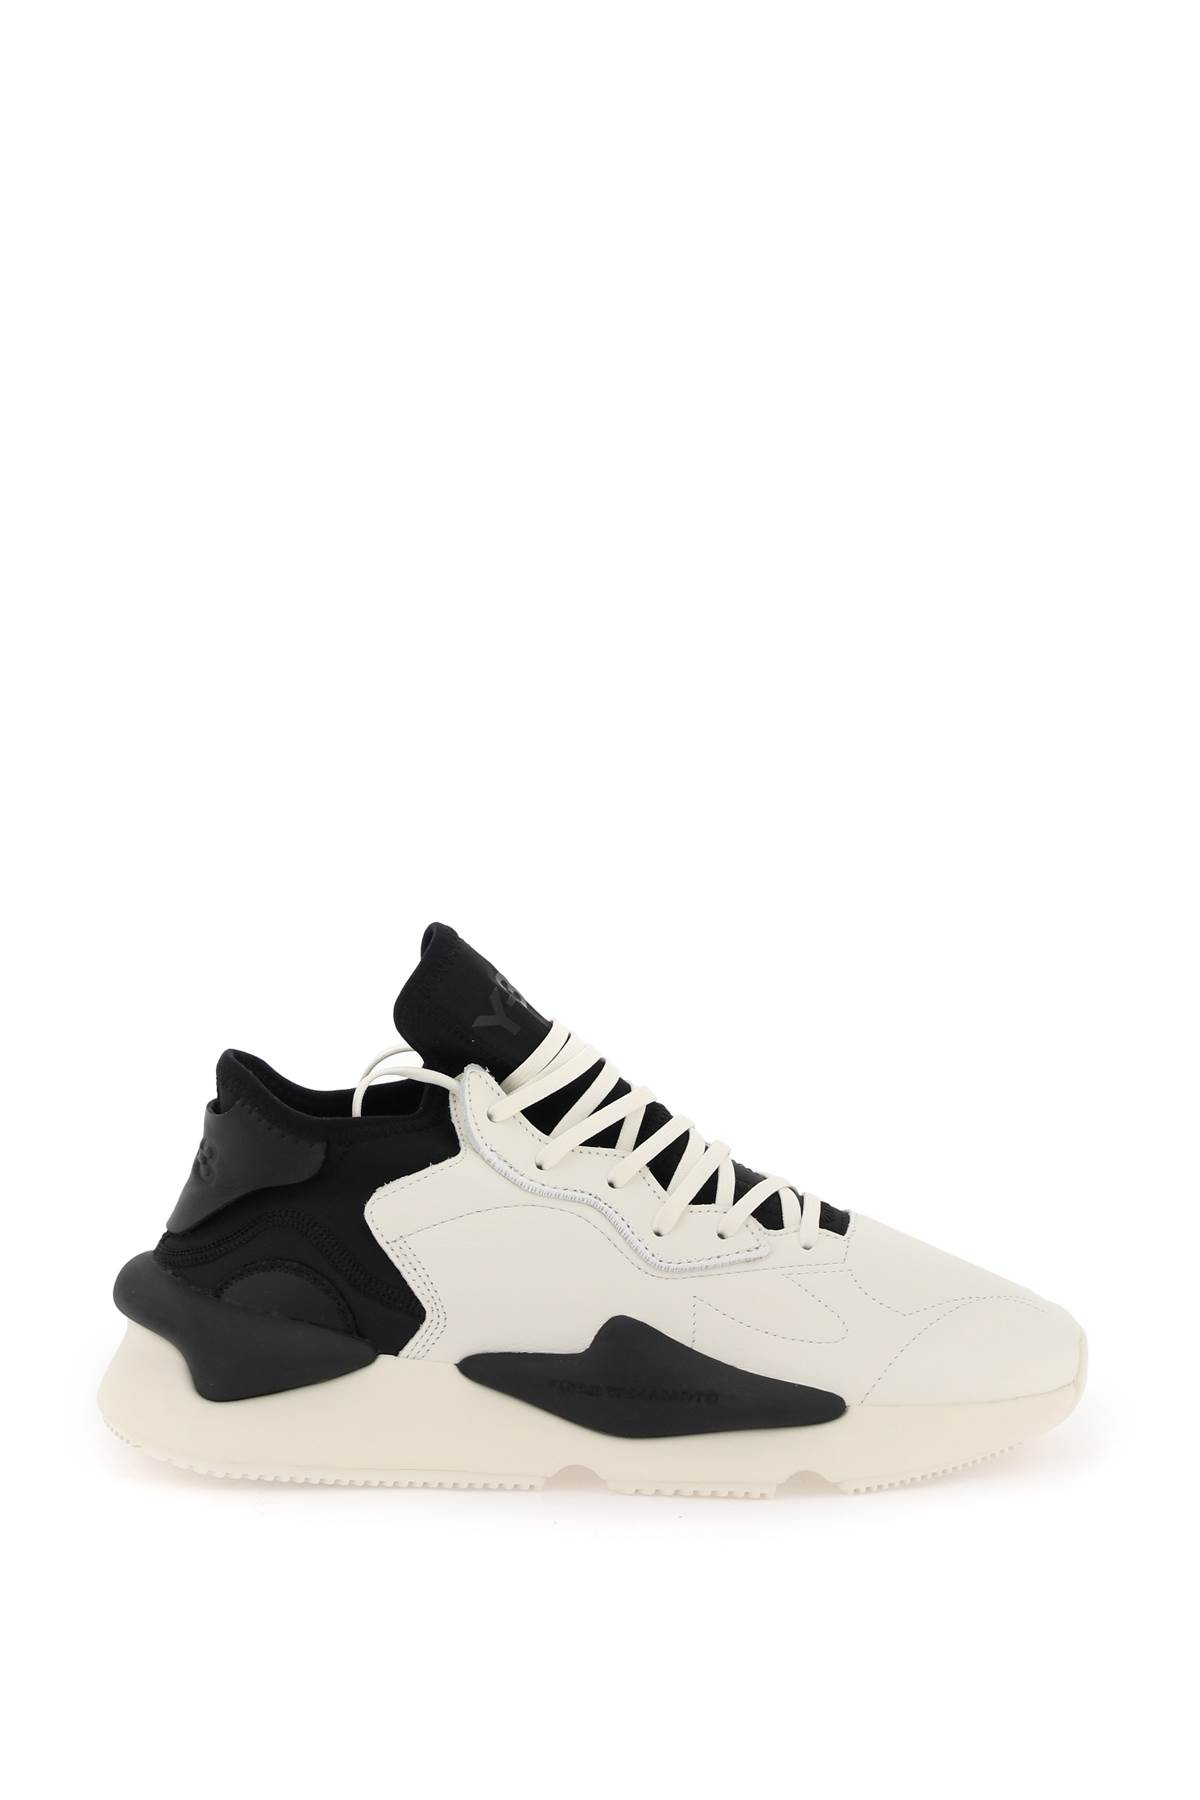 kaiwa White Leather Sneakers